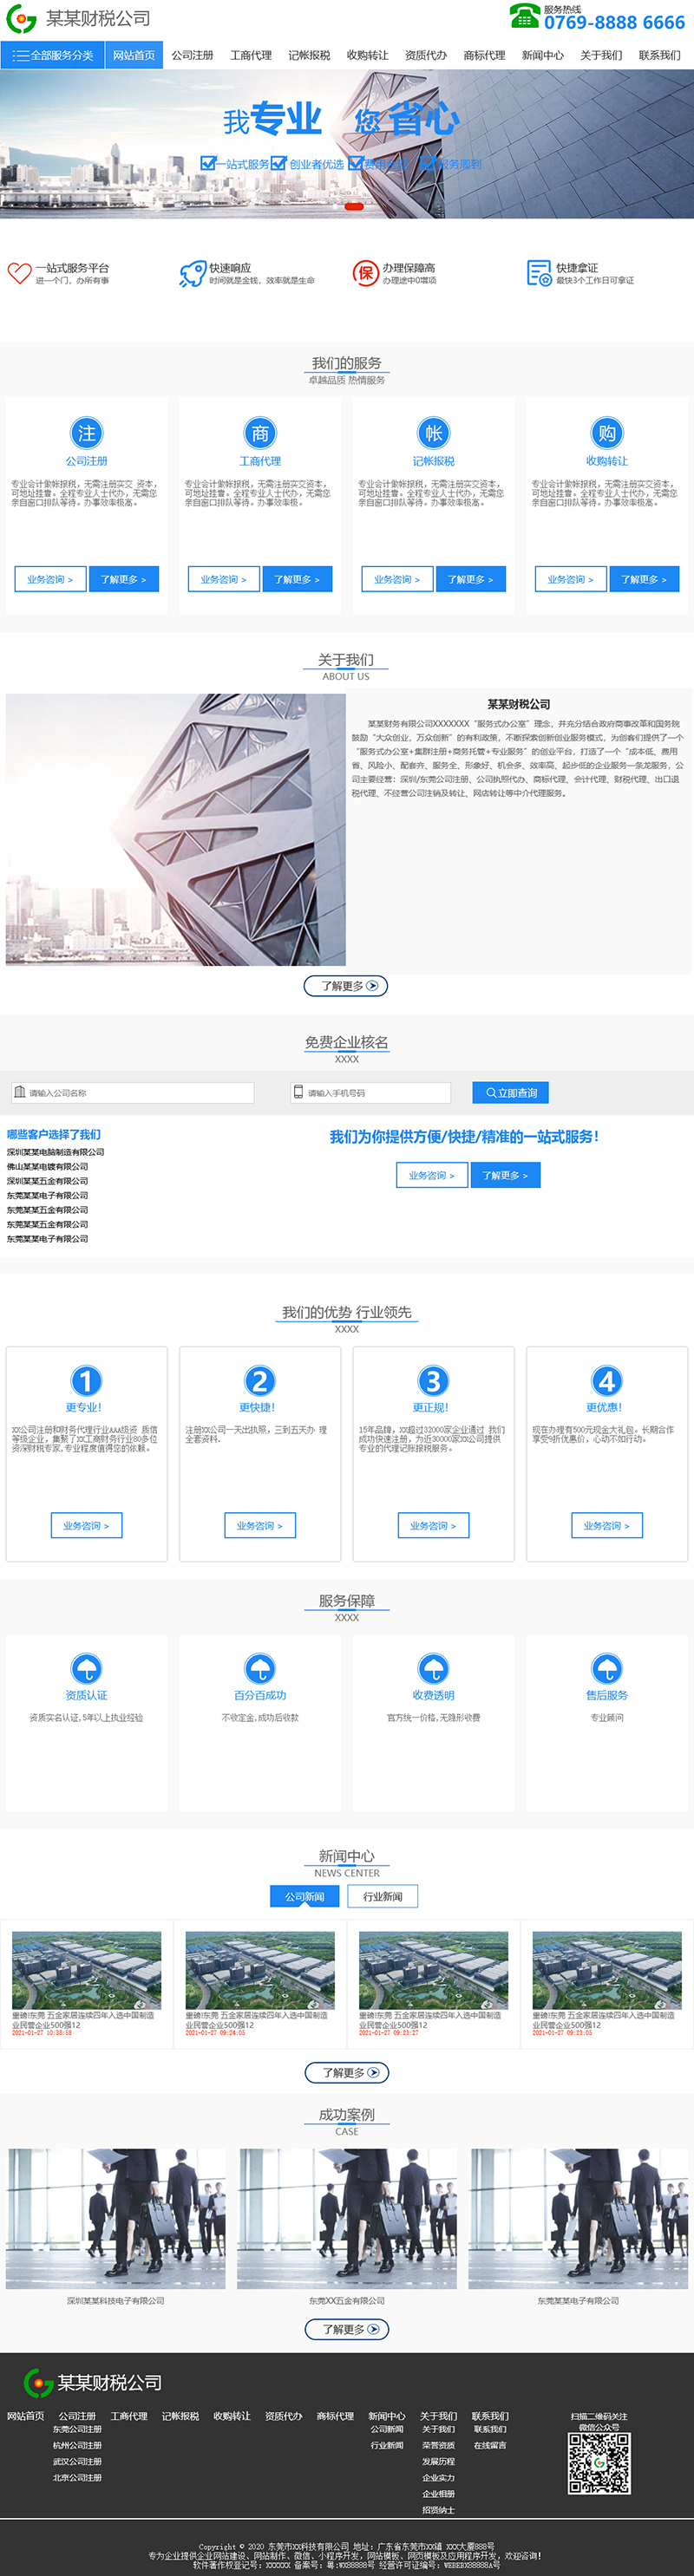 深圳宇行科技-财务/财税公司通用响应式模板网站模板